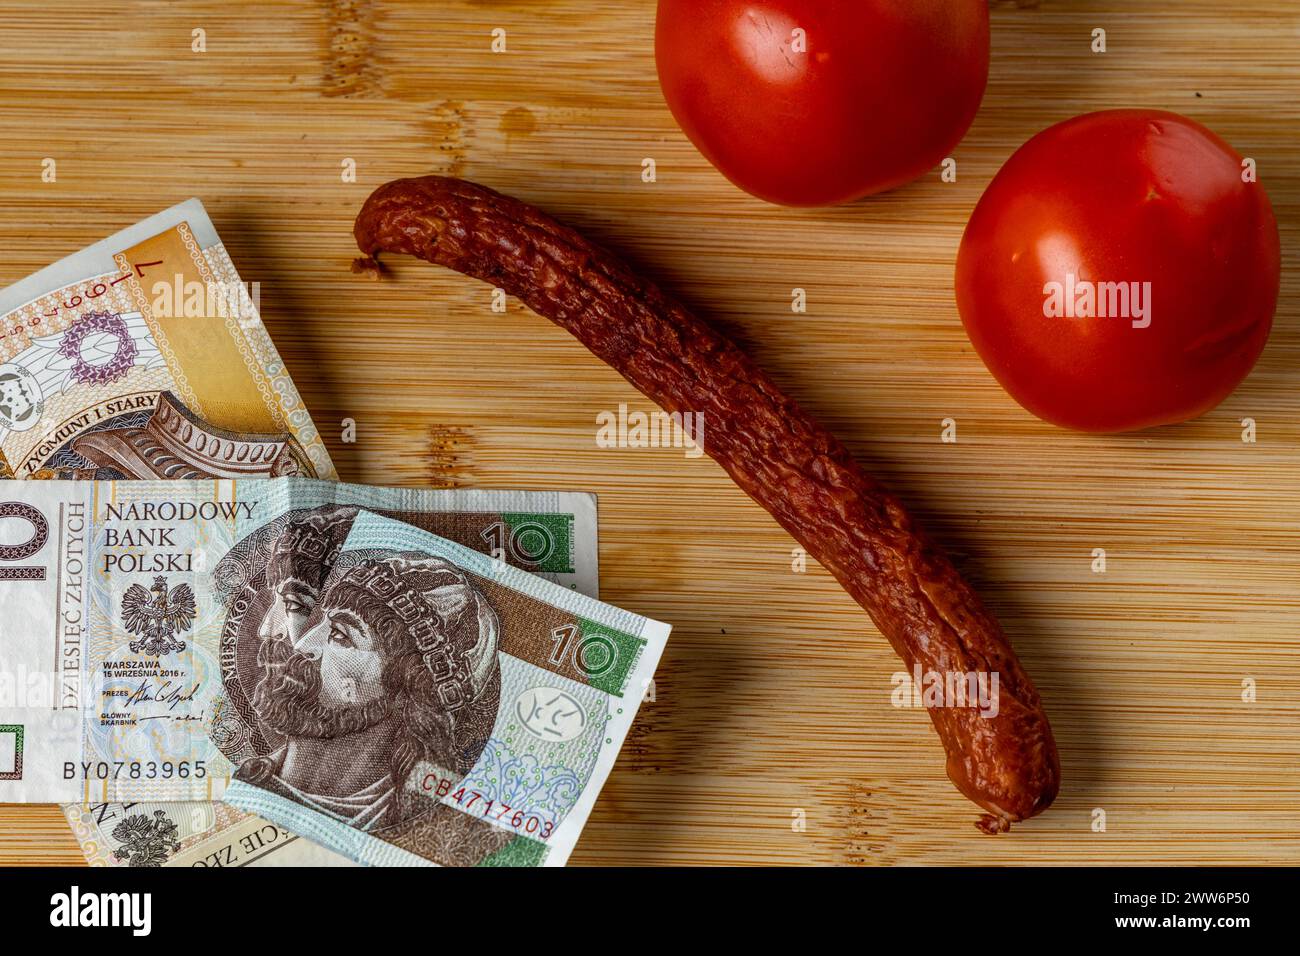 Augmentation des prix alimentaires en Pologne, pain, beurre sur une planche à découper, tomates, saucisses, TVA sur les aliments Pologne argent Banque D'Images